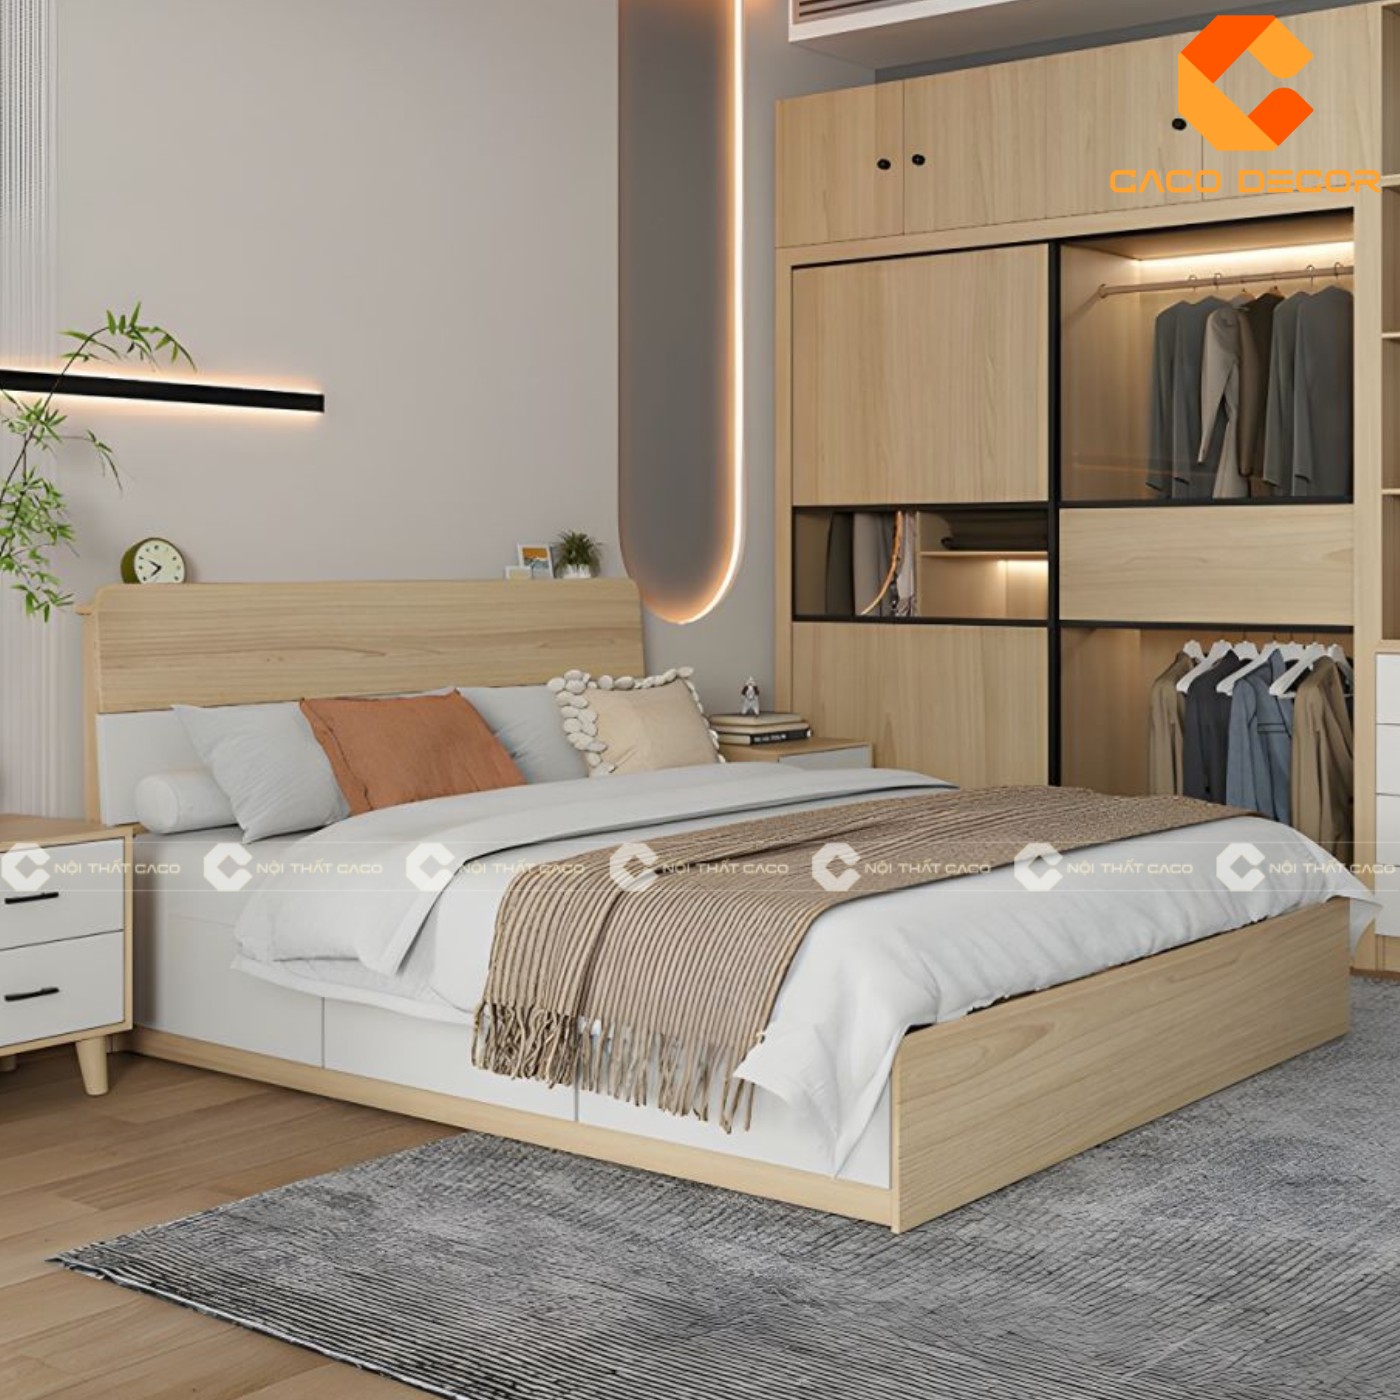 Giường ngủ gỗ công nghiệp đẹp, chất lượng với giá tốt nhất thị trường 15